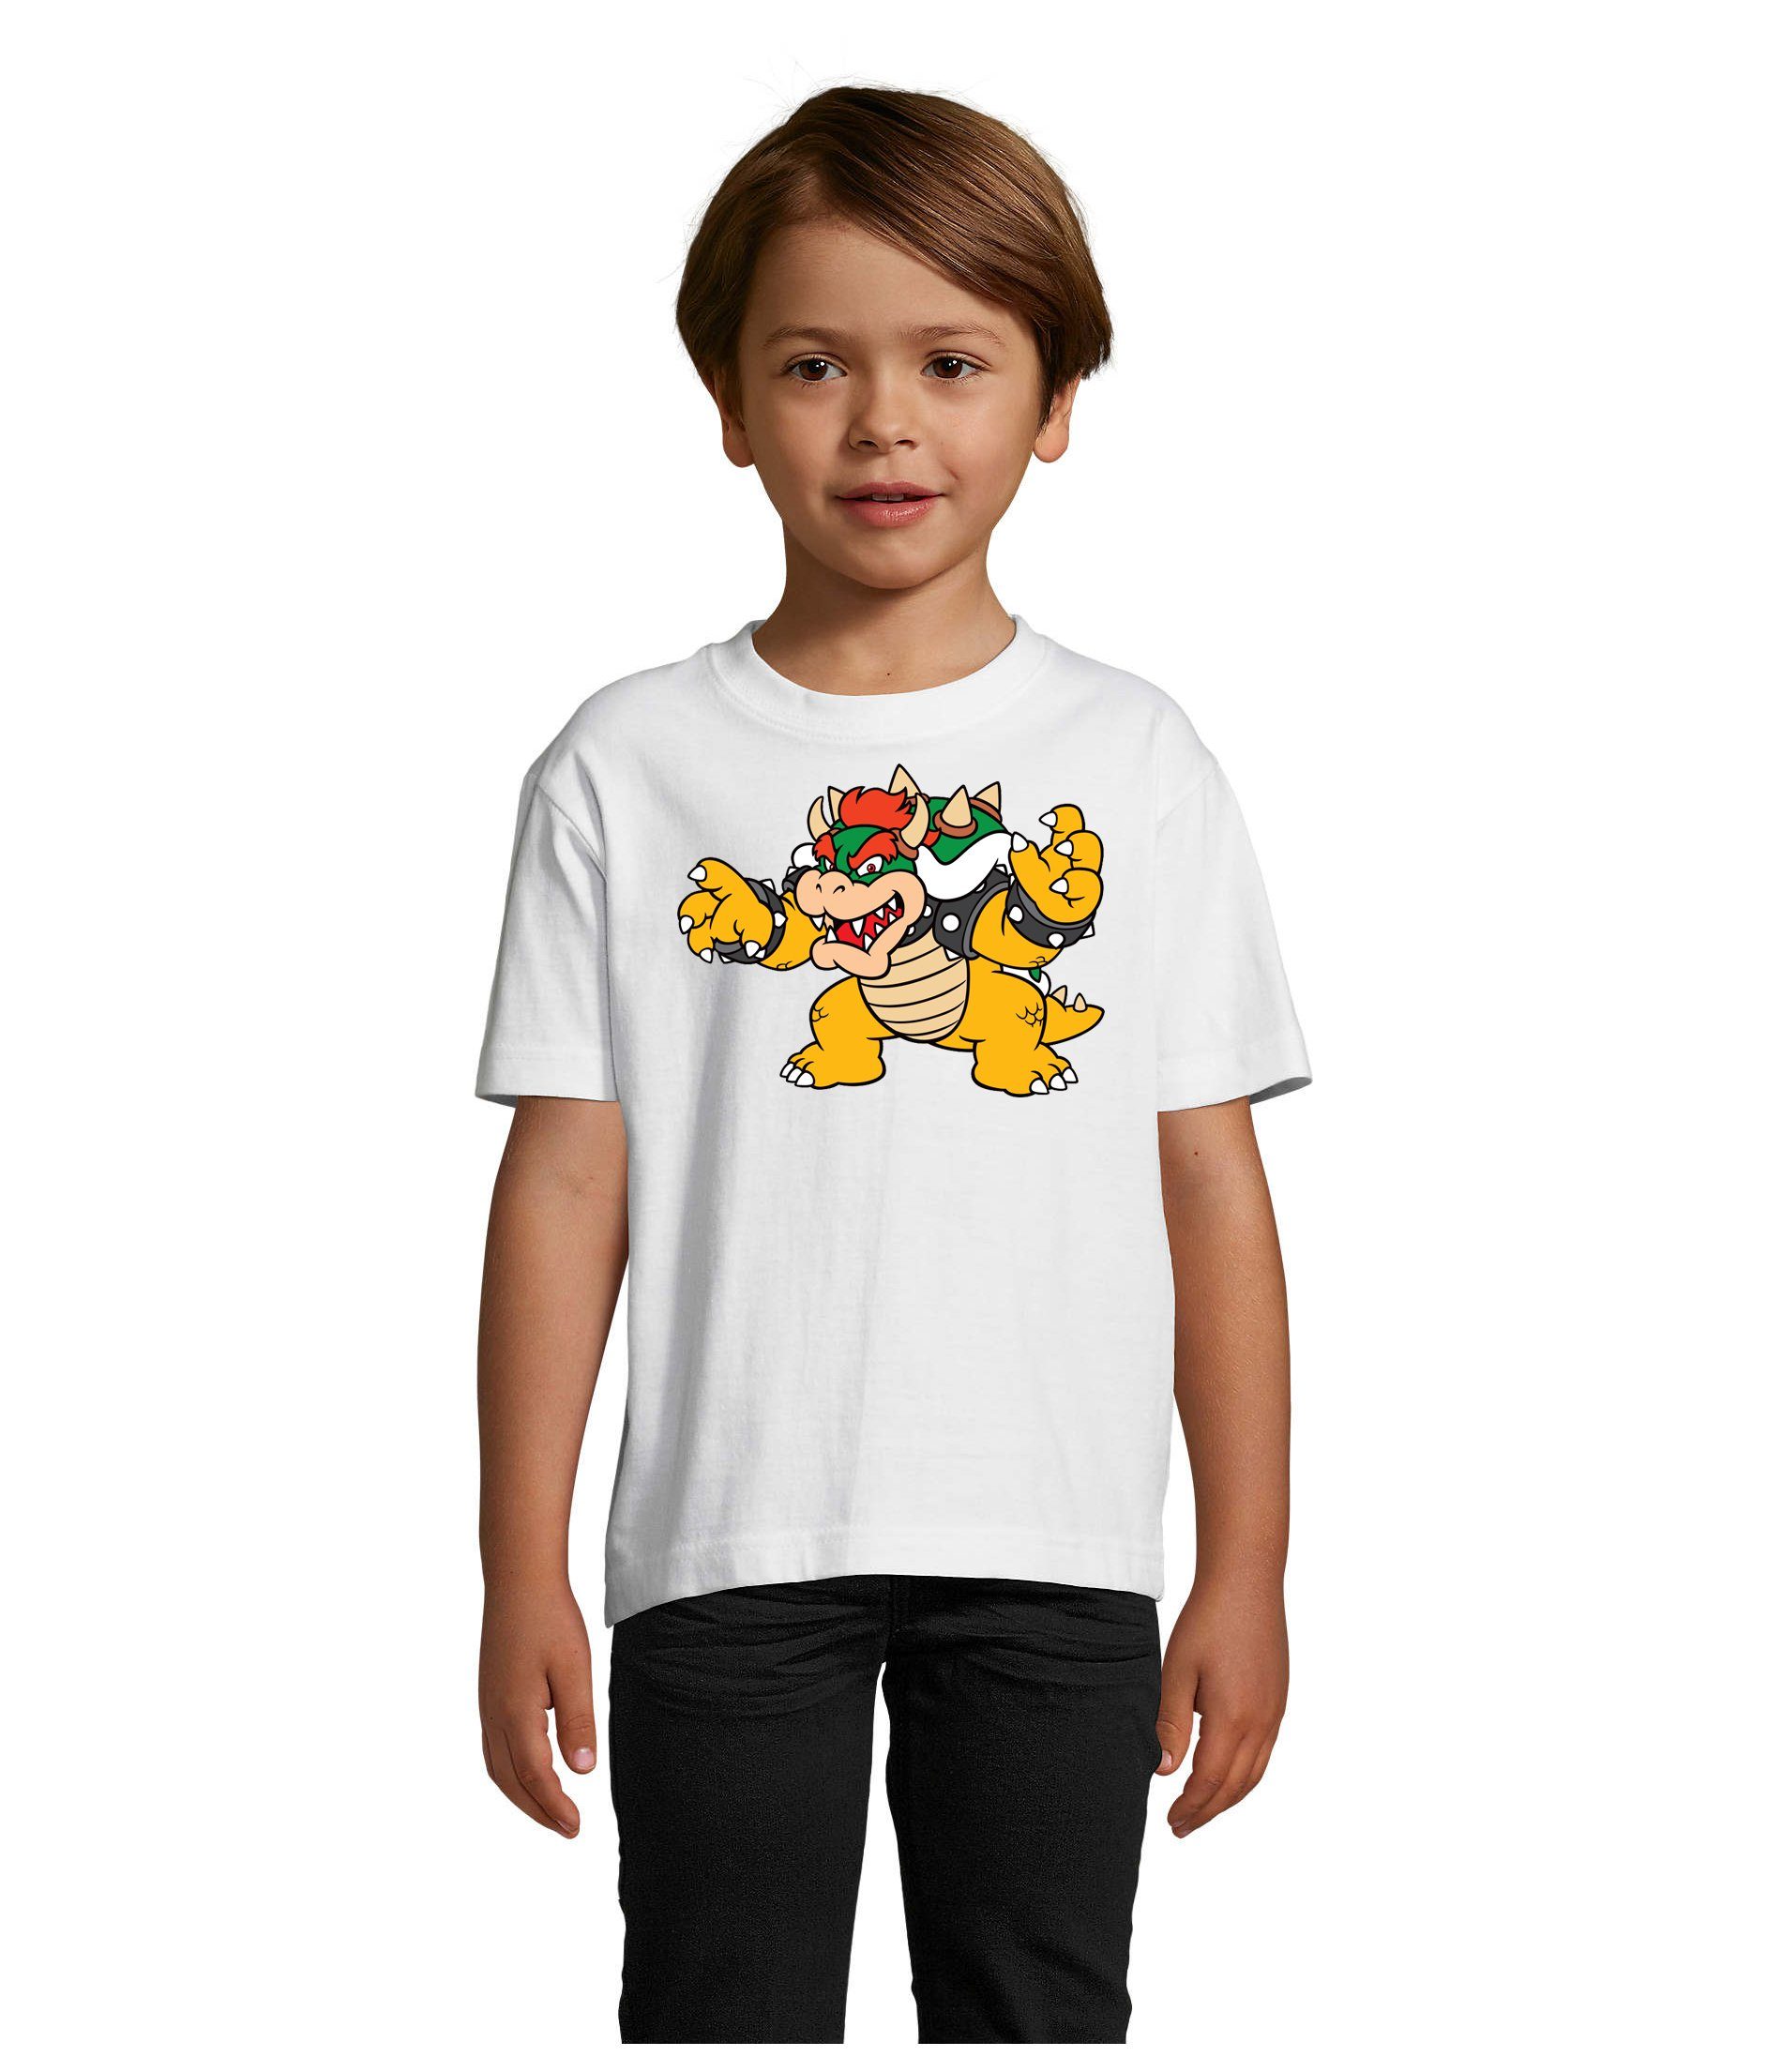 Blondie & Brownie Konsole Luigi Bowser Weiss Gamer T-Shirt Yoshi Game Mario Kinder Nintendo